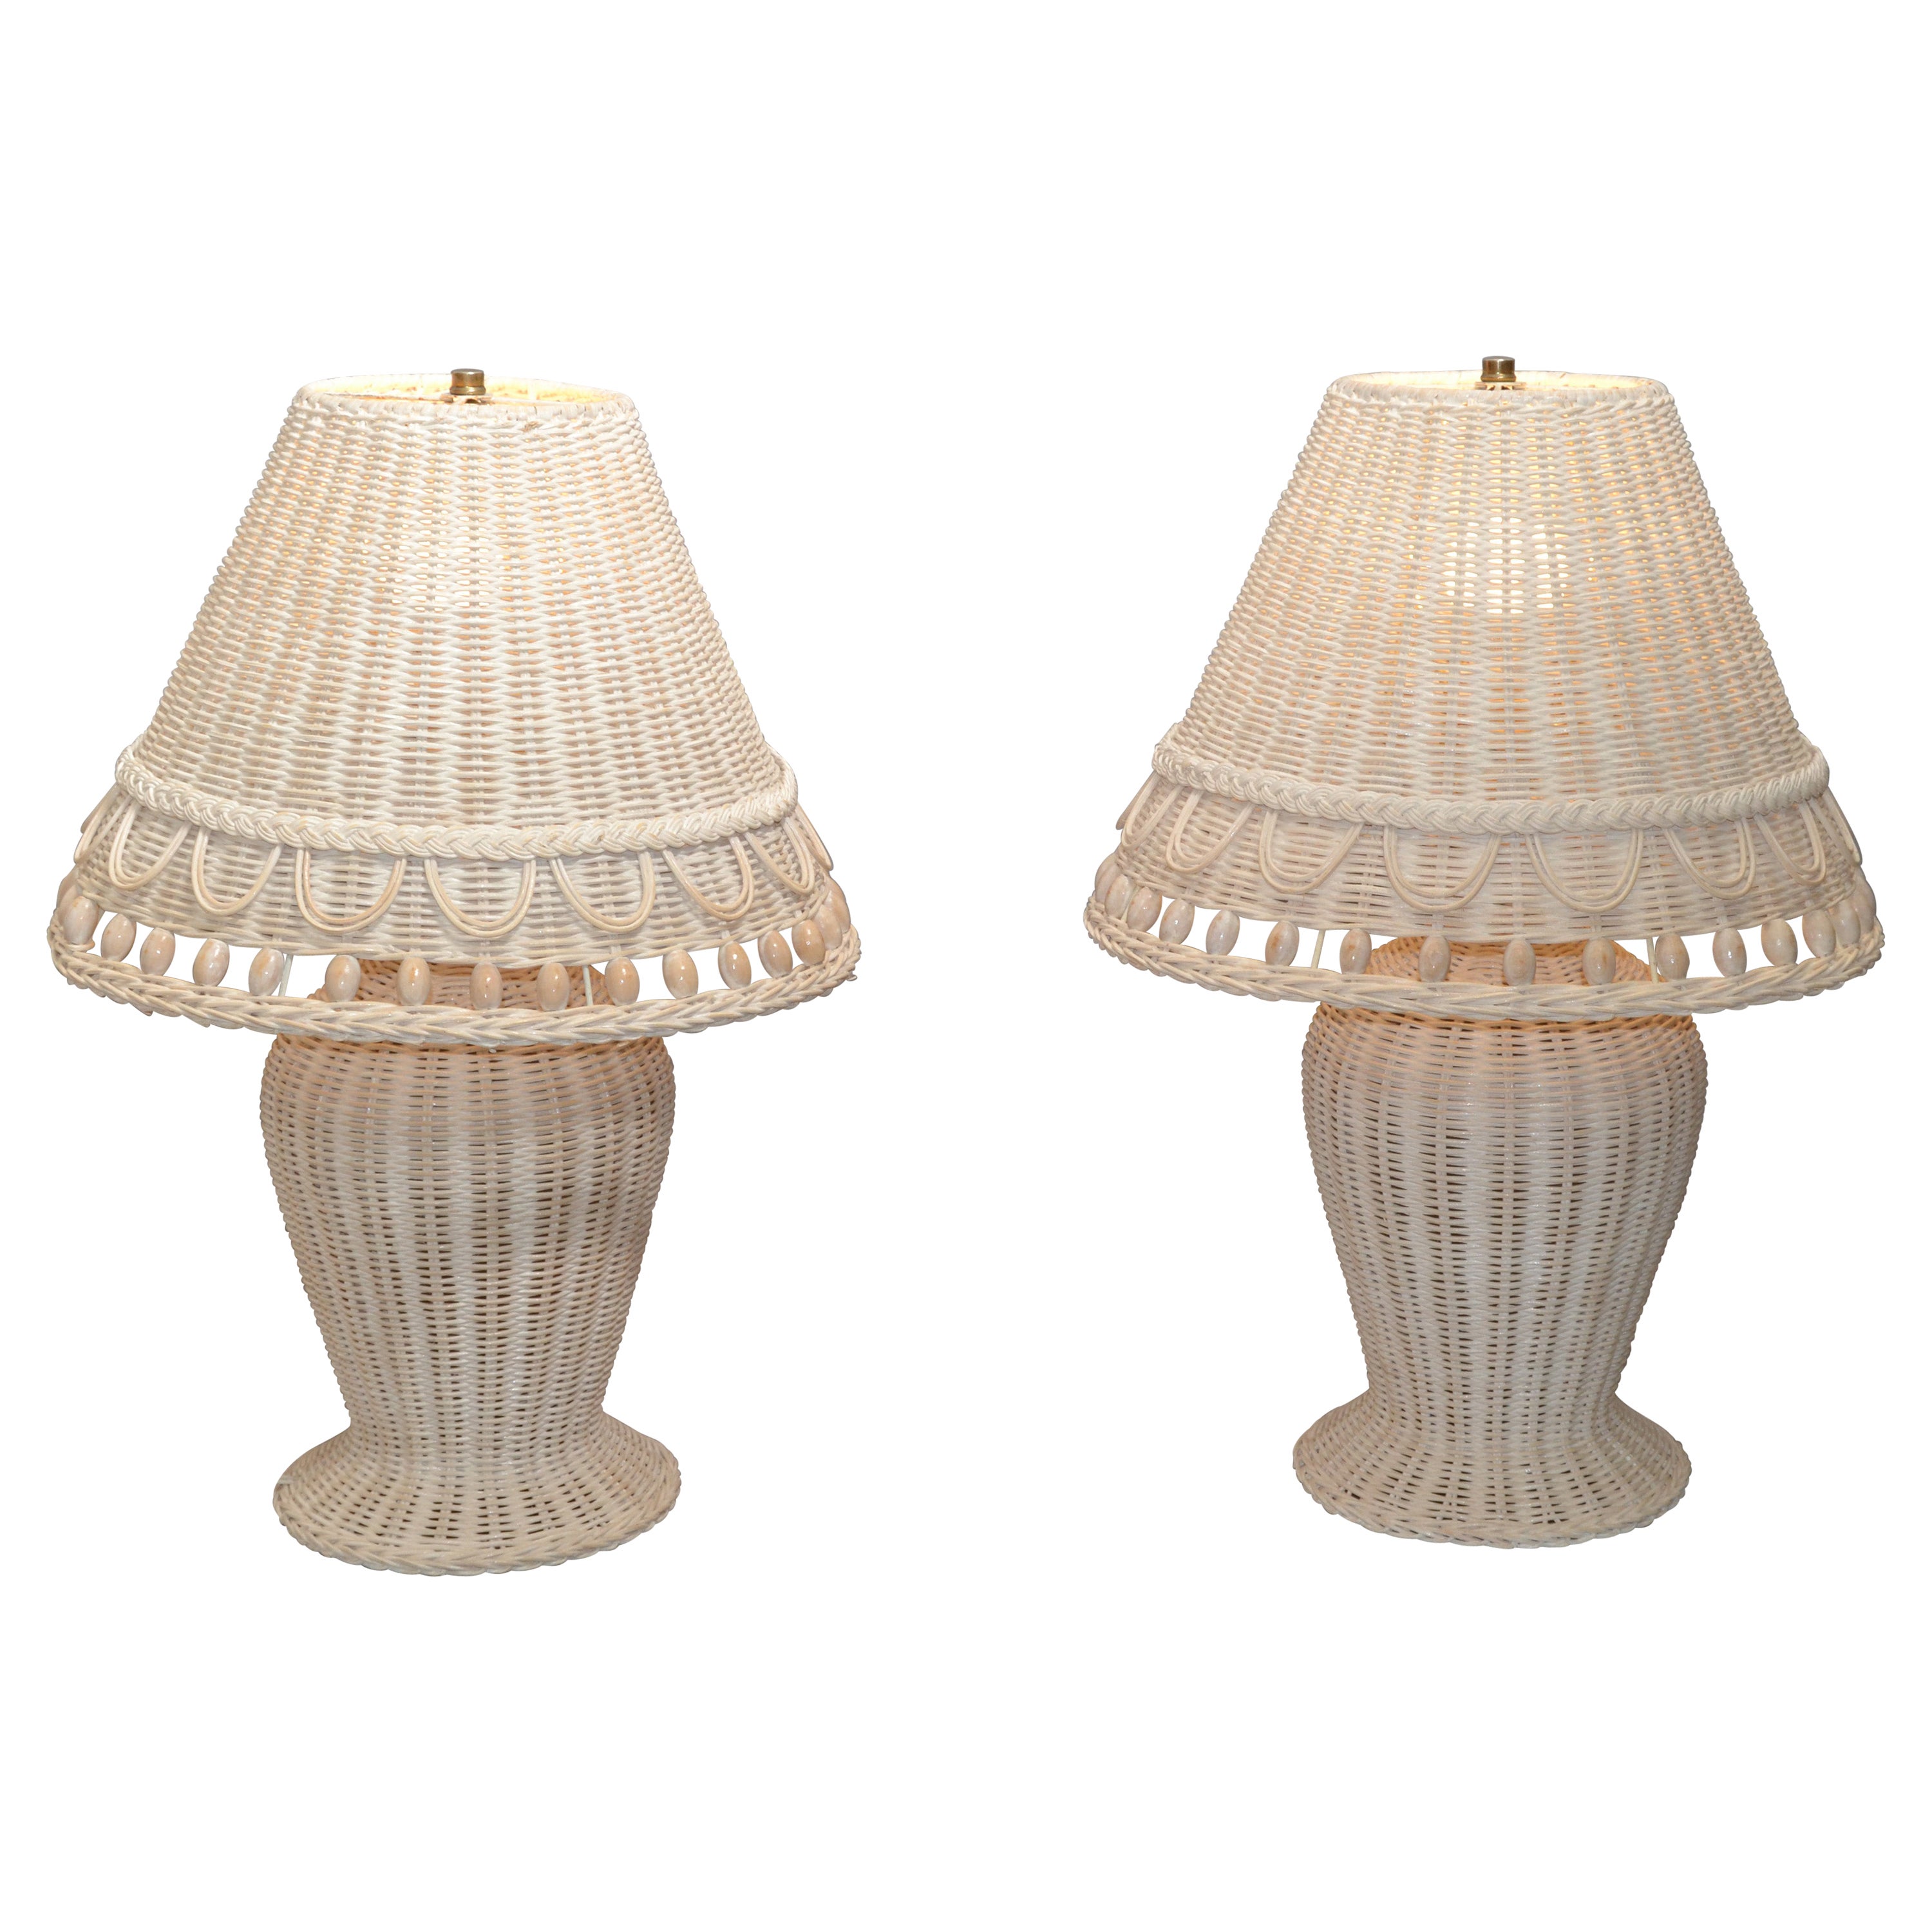 2 lampes de bureau Hollywood Regency vintage blanches blanchies en osier tressé à la main et perles